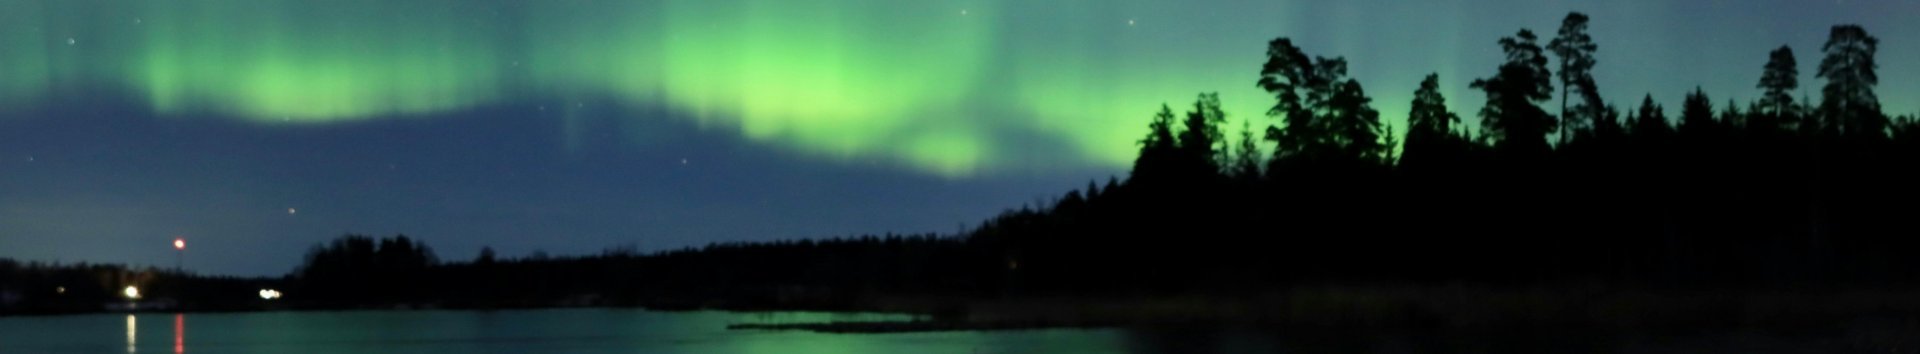 Waldsilhouette in der Nacht mit Polarlicht am Himmel